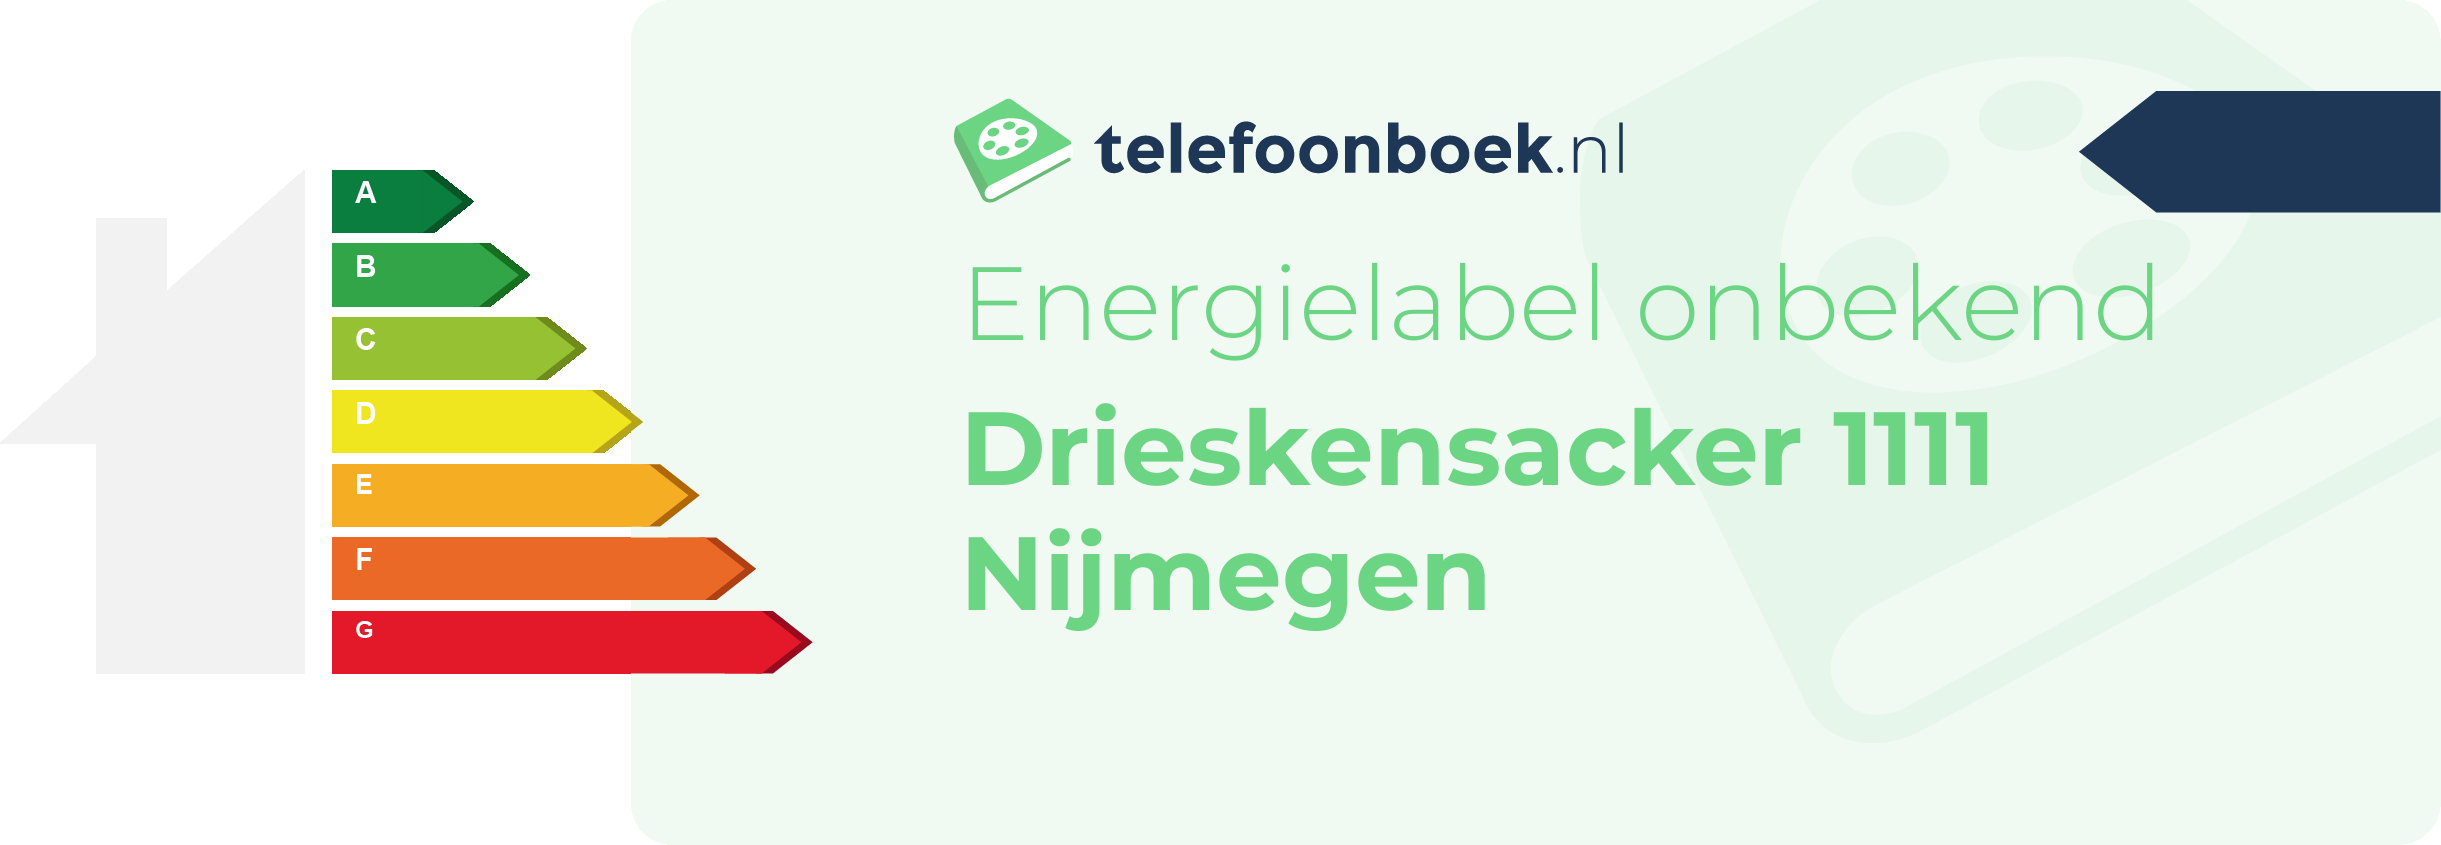 Energielabel Drieskensacker 1111 Nijmegen